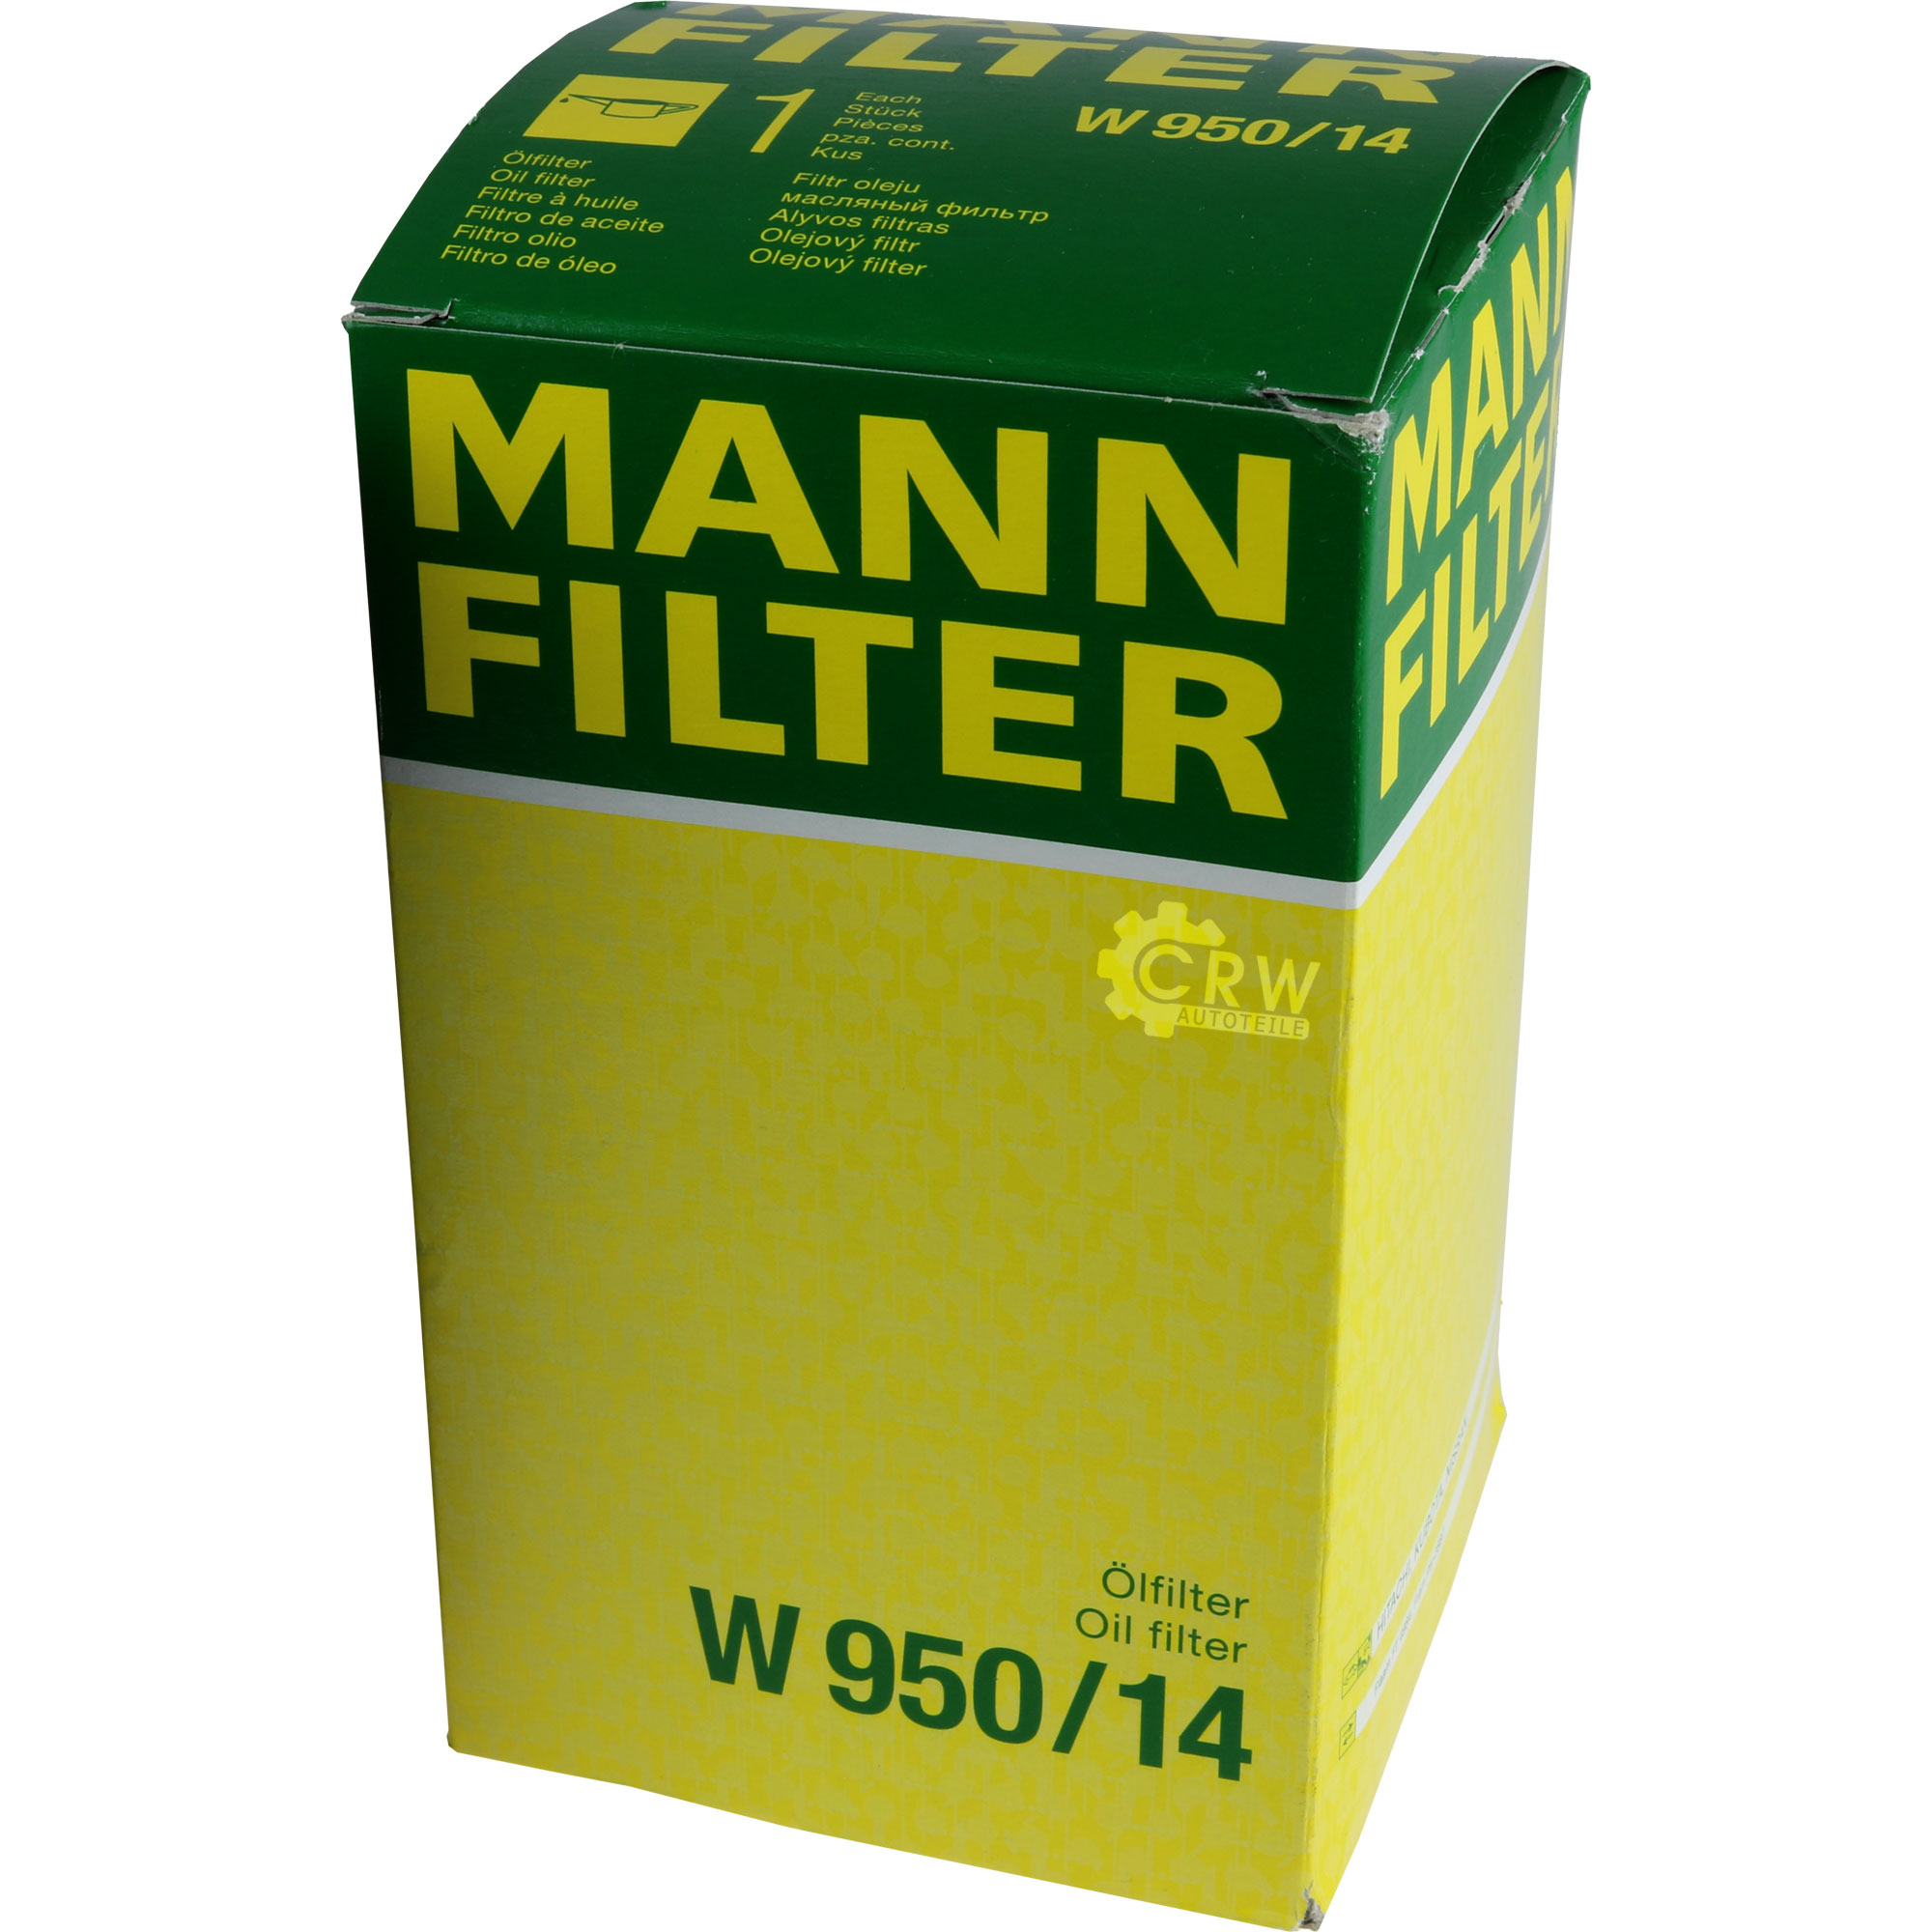 MANN-FILTER Ölfilter W 950/14 Oil Filter